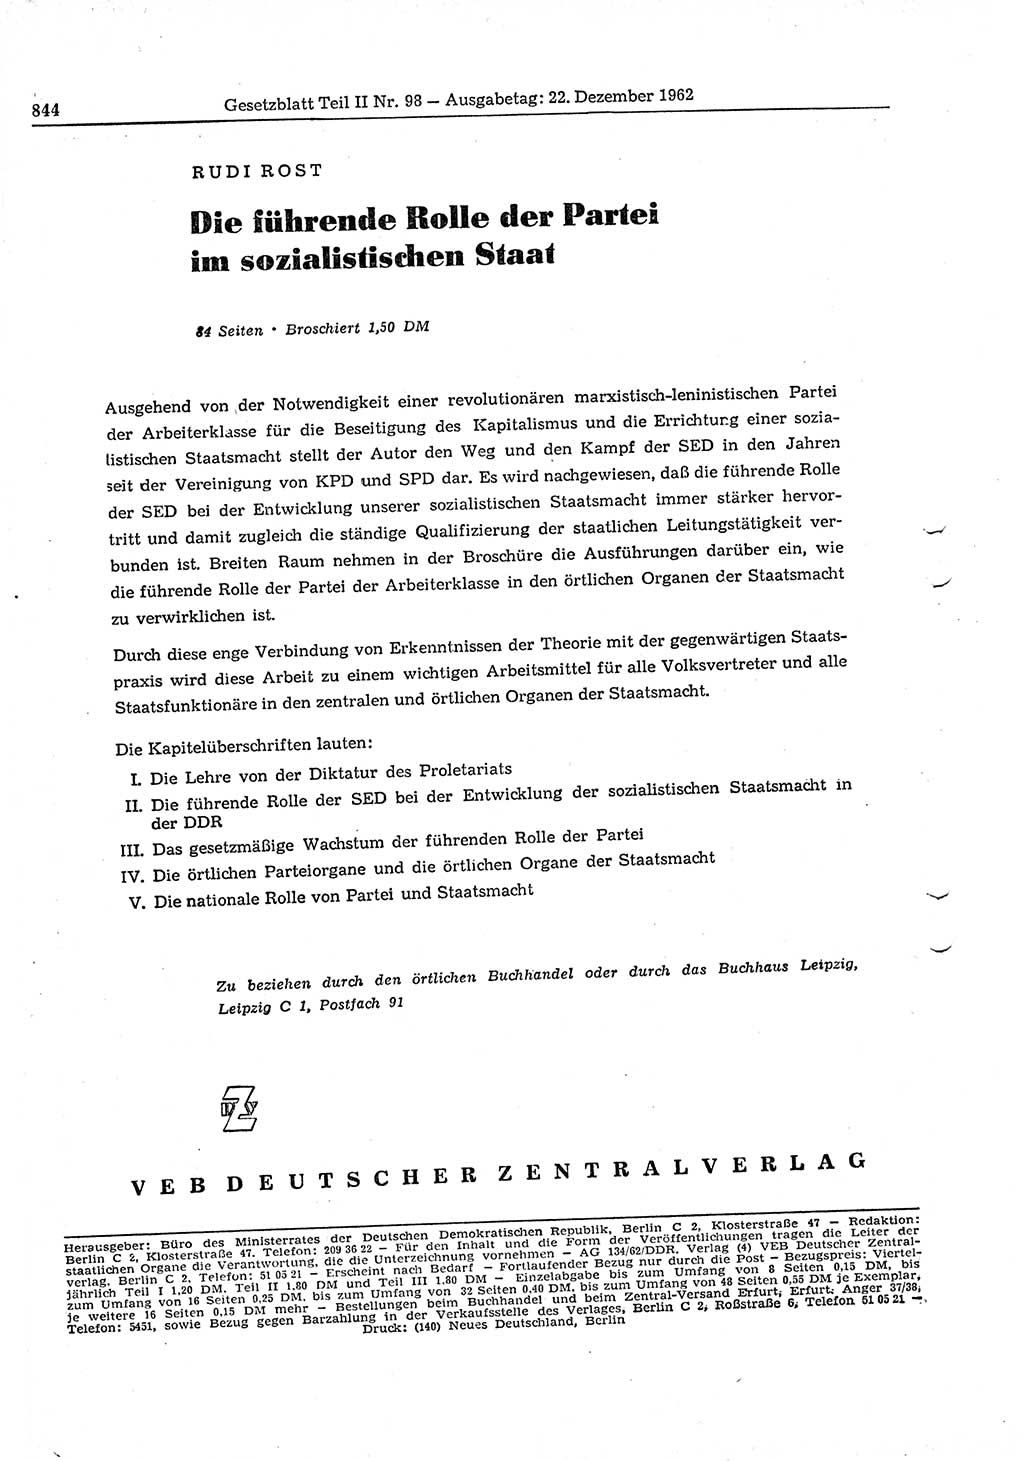 Gesetzblatt (GBl.) der Deutschen Demokratischen Republik (DDR) Teil ⅠⅠ 1962, Seite 844 (GBl. DDR ⅠⅠ 1962, S. 844)